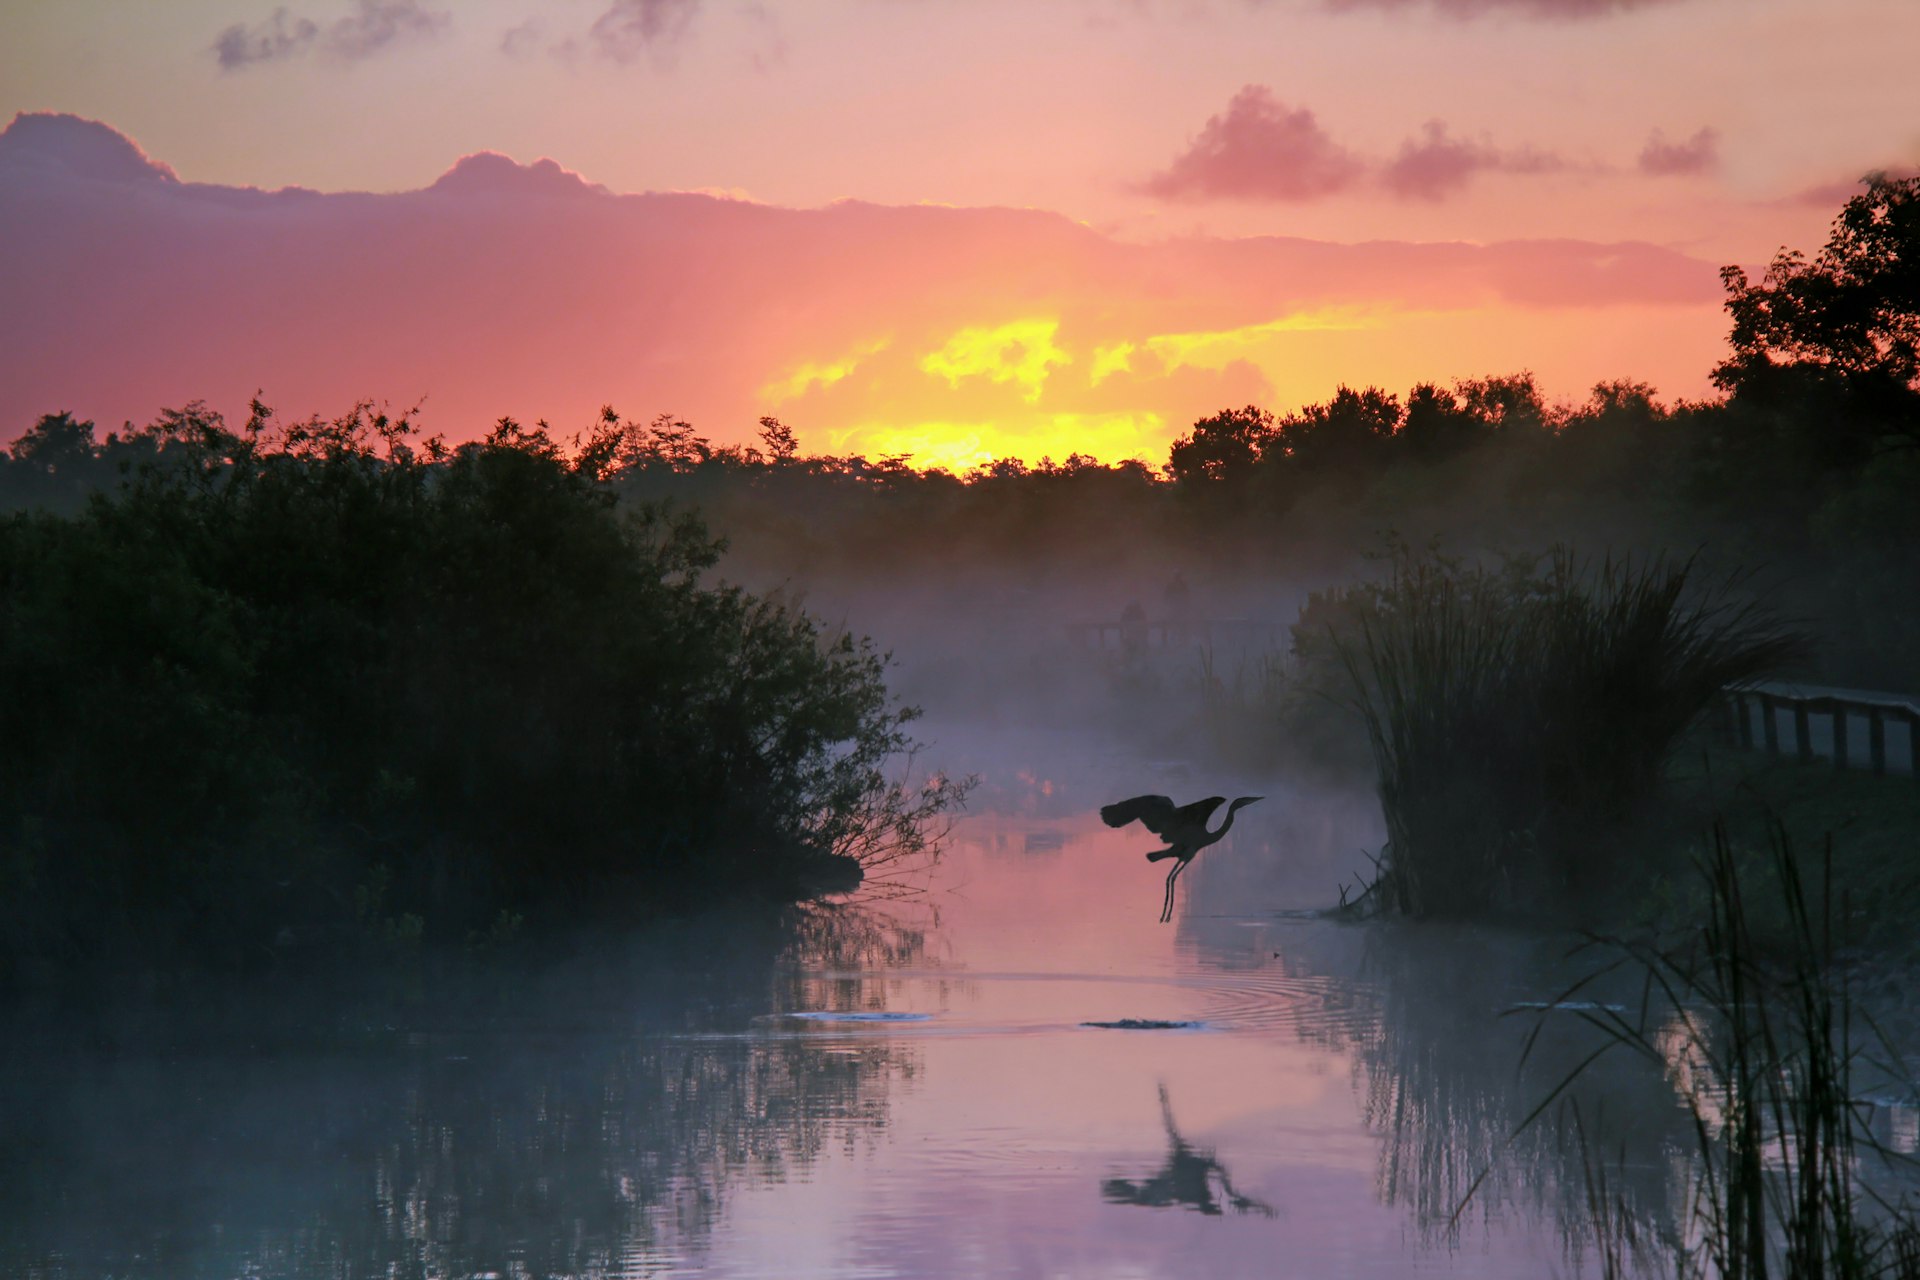 นกกระสาบินเหนือผืนน้ำที่ล้อมรอบด้วยทุ่งหญ้าเมื่อพระอาทิตย์ขึ้น